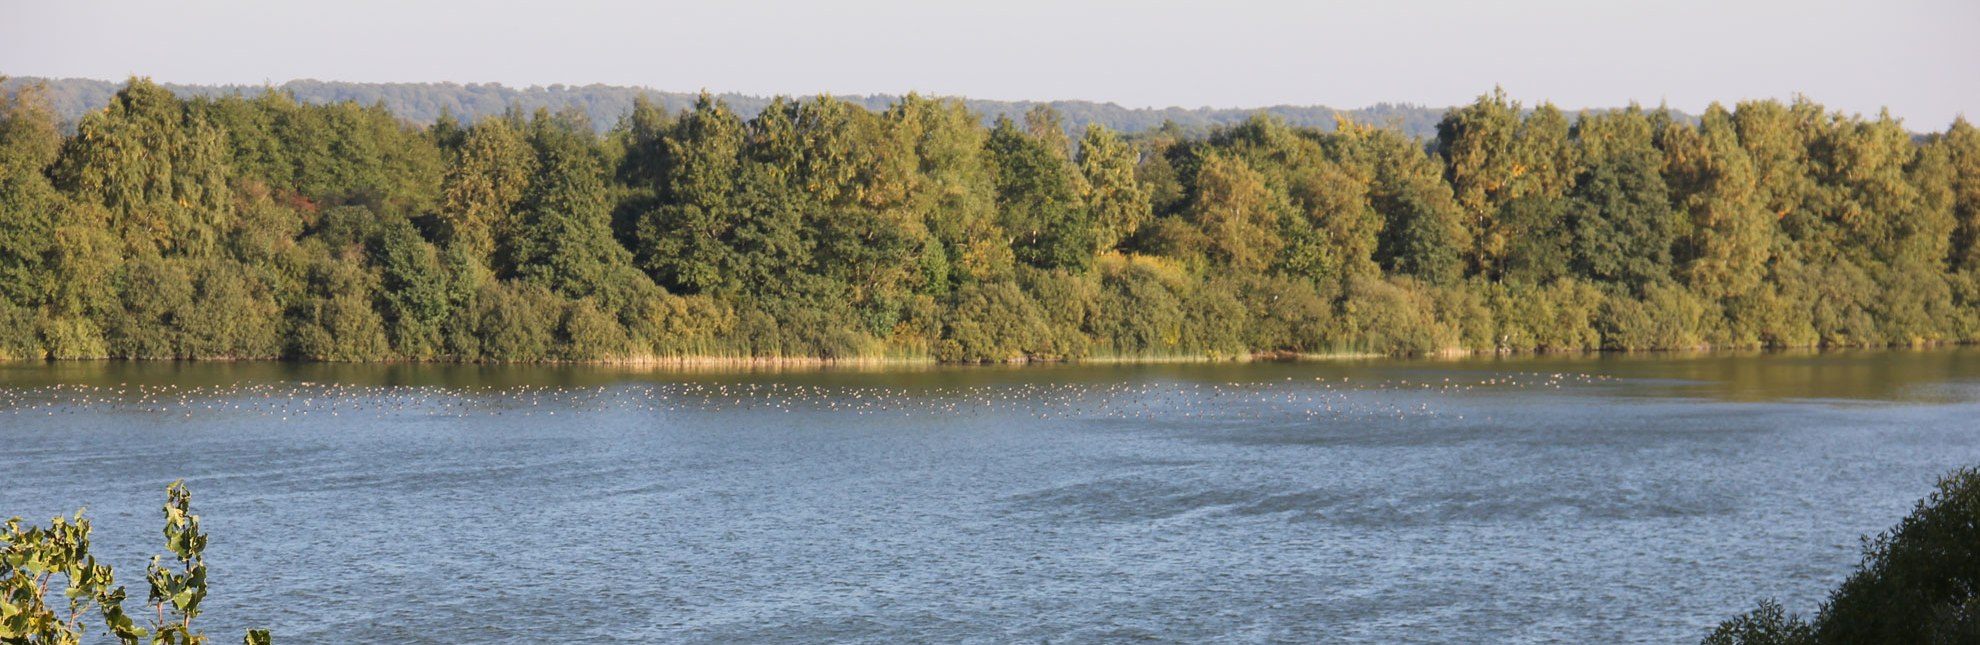 Blick auf den Mechower See - ein Paradies für Wasservögel., © HLMS GmbH